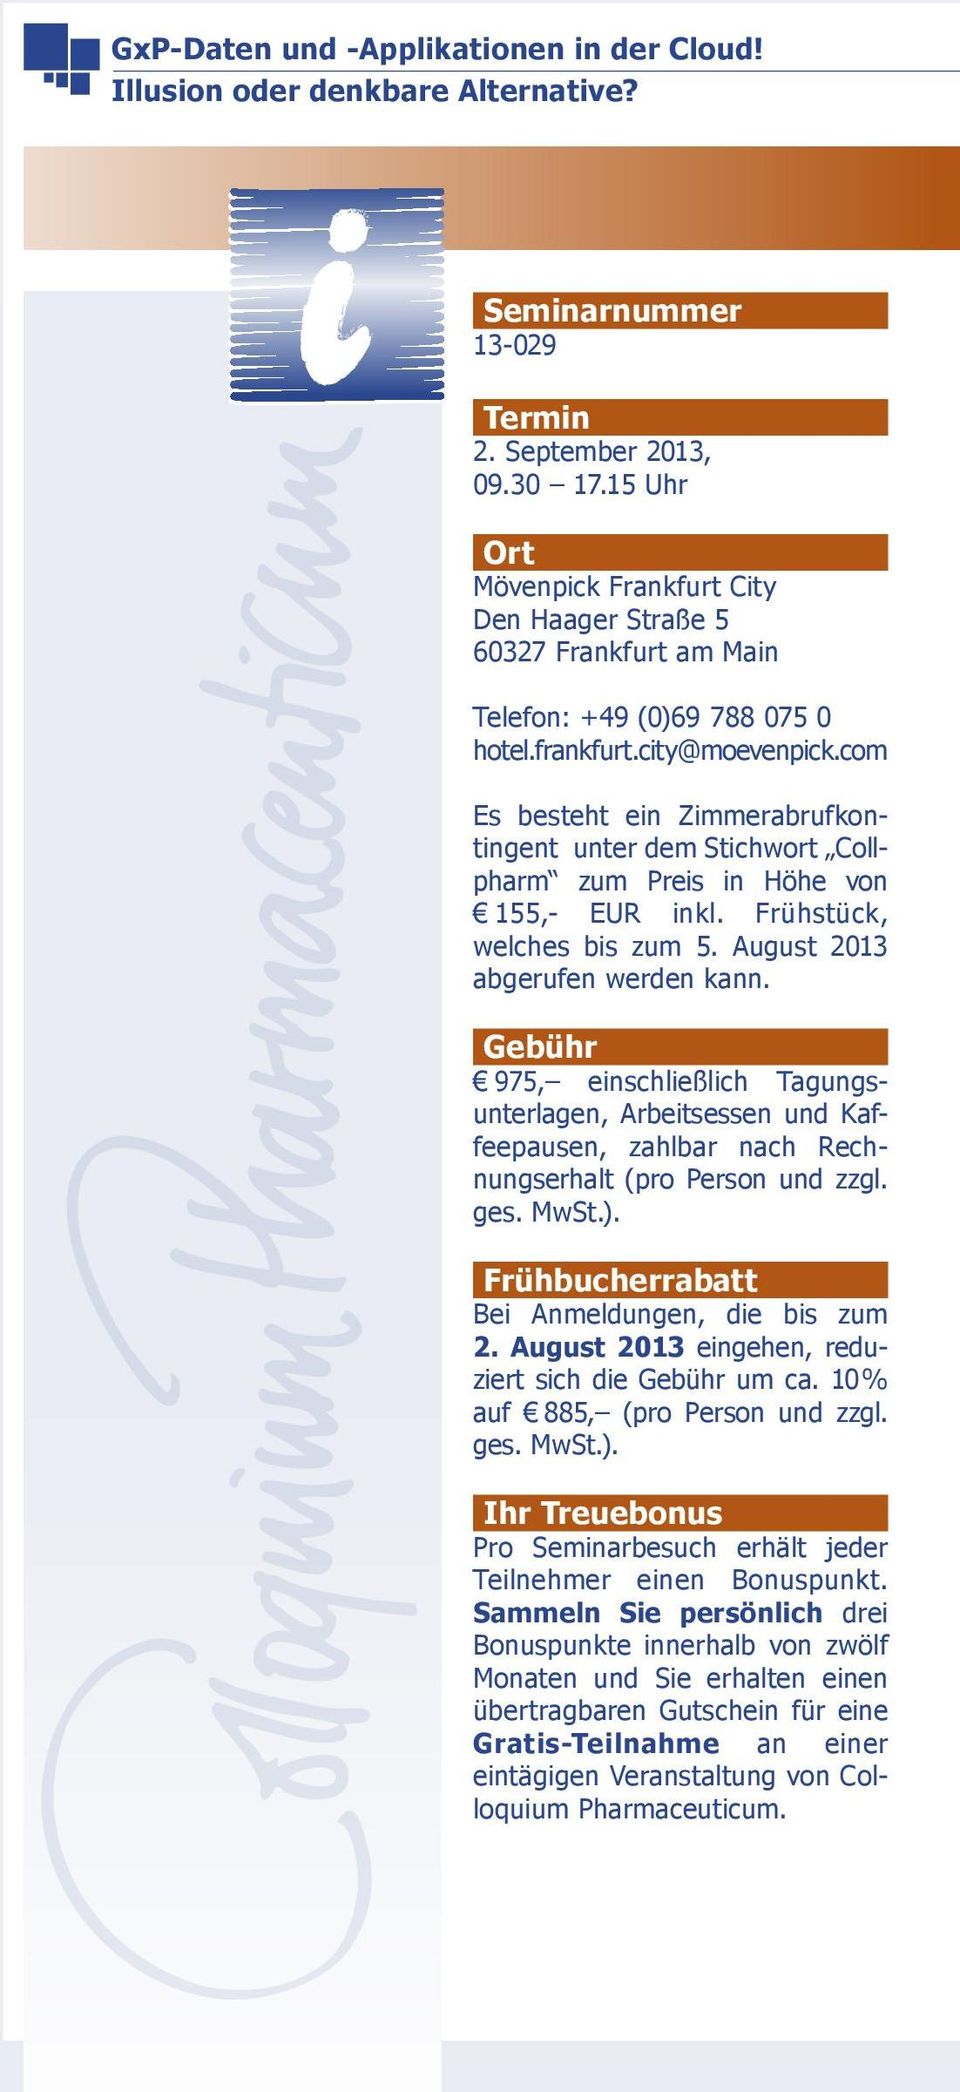 com Es besteht ein Zimmerabrufkontingent unter dem Stichwort Collpharm zum Preis in Höhe von 155,- EUR inkl. Frühstück, welches bis zum 5. August 2013 abgerufen werden kann.